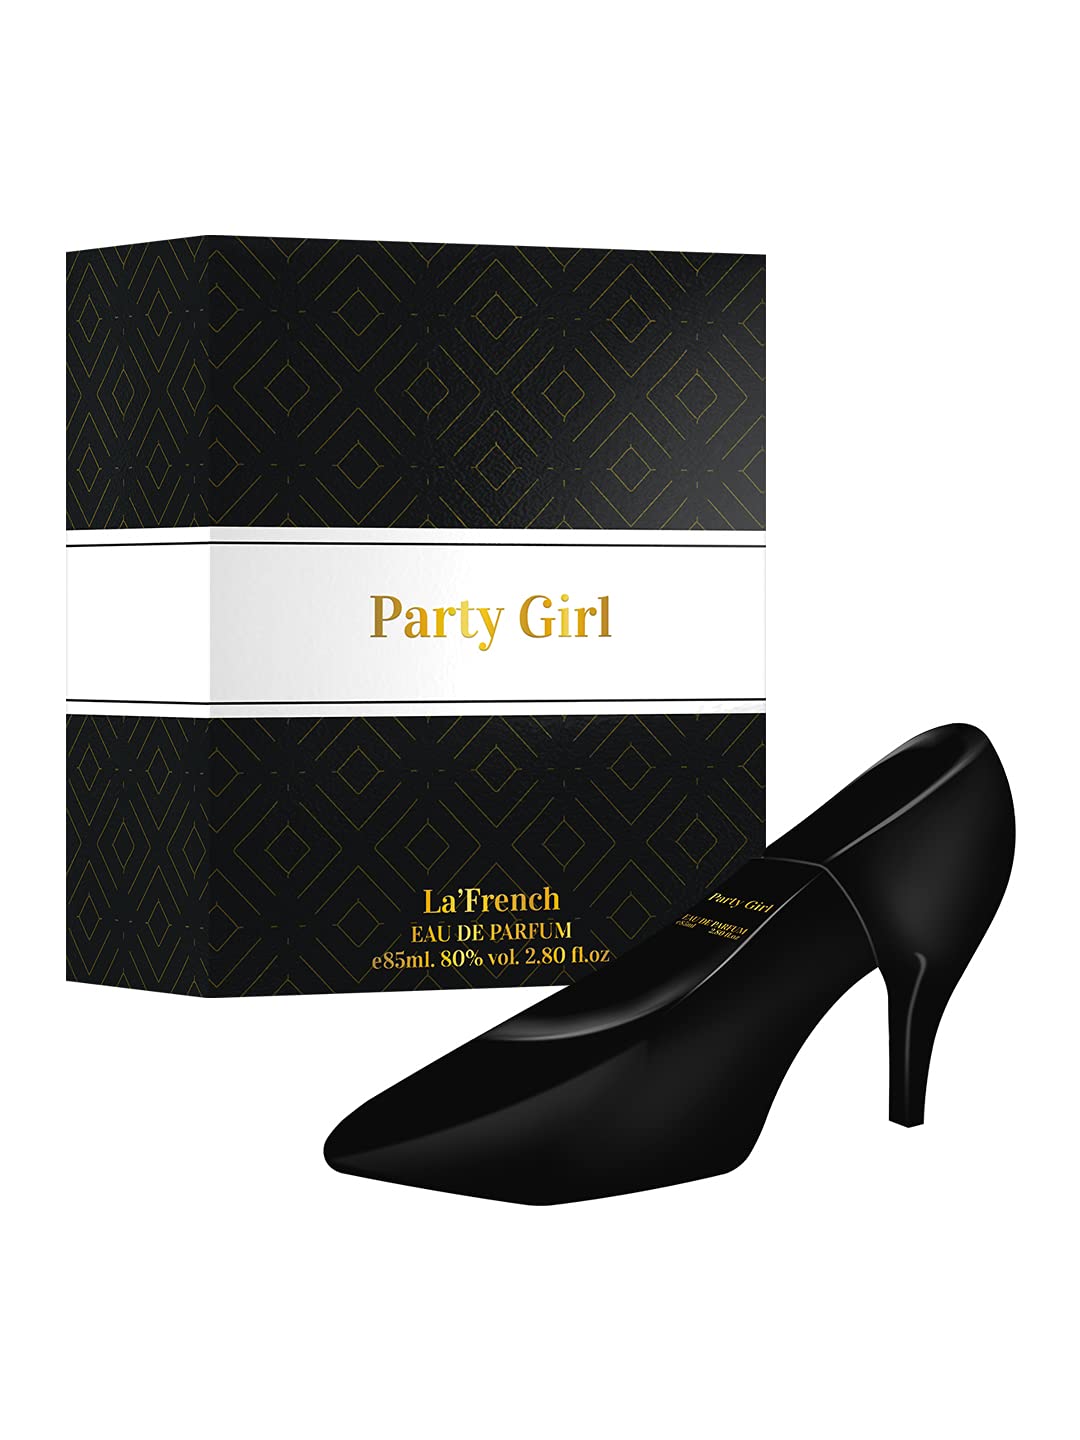 La’ French Party Girl Eau de Parfum